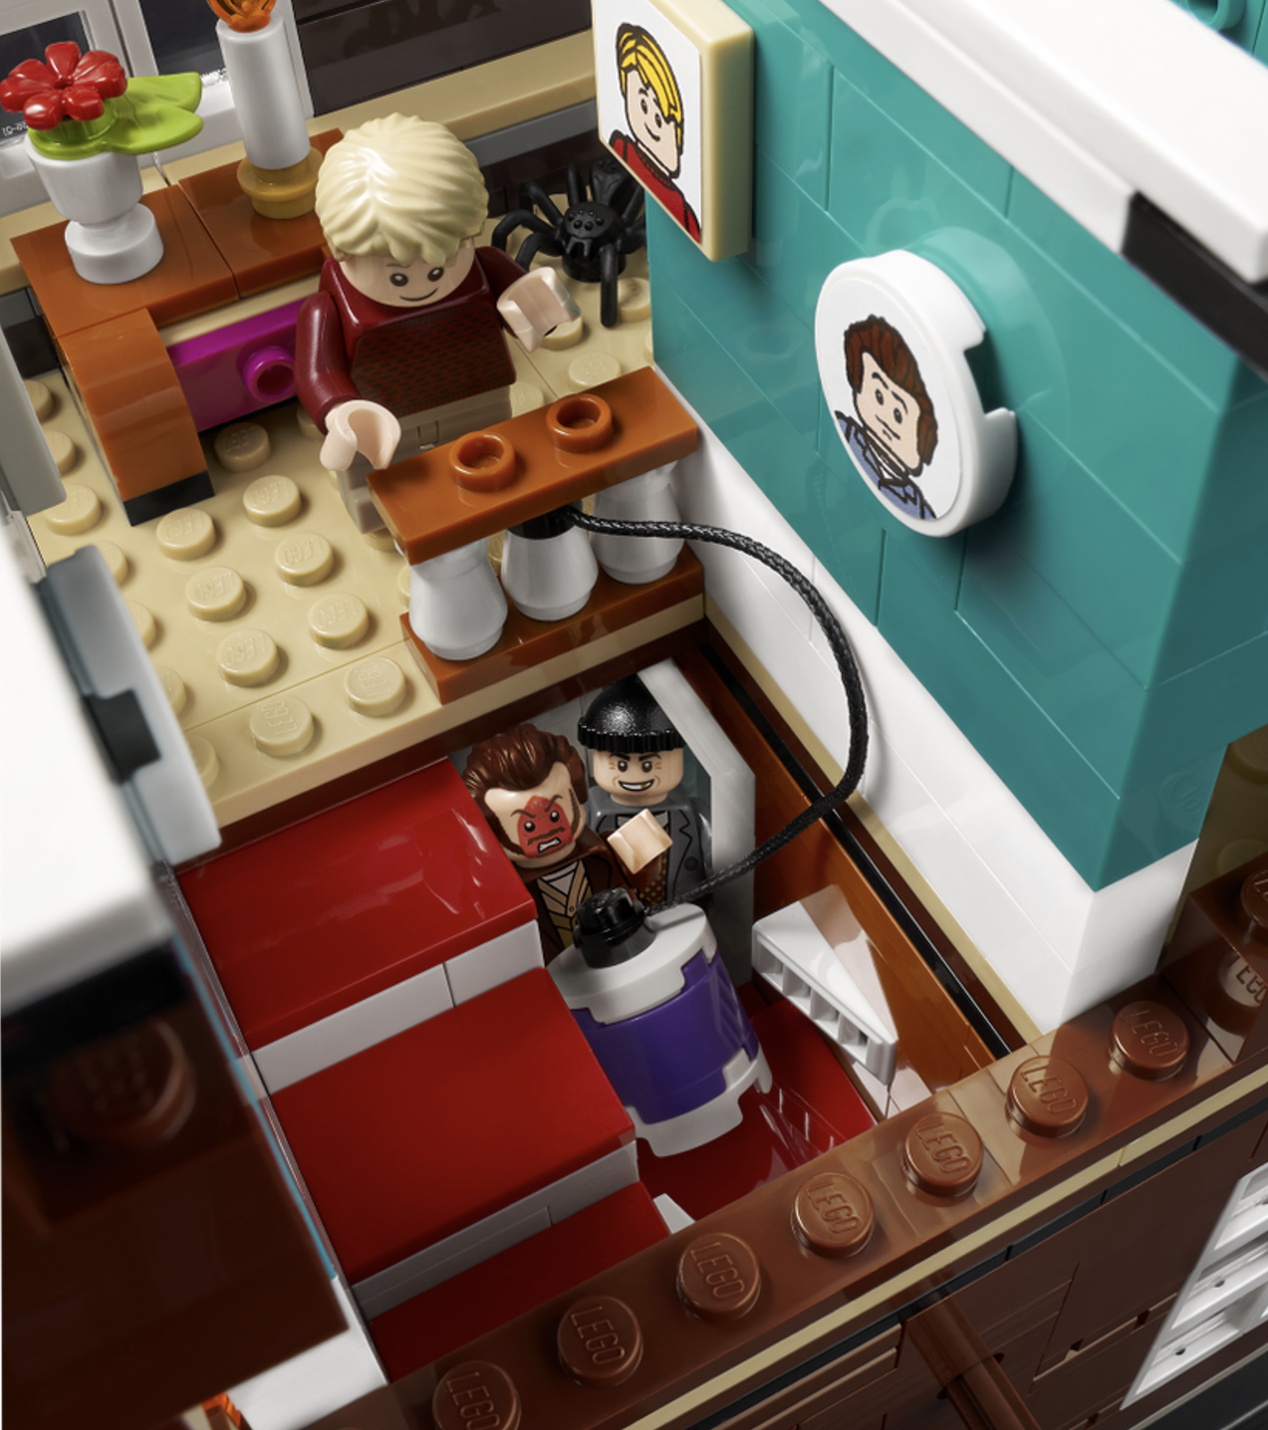 Конструктор LEGO Коллекционные наборы 21330 Один дома